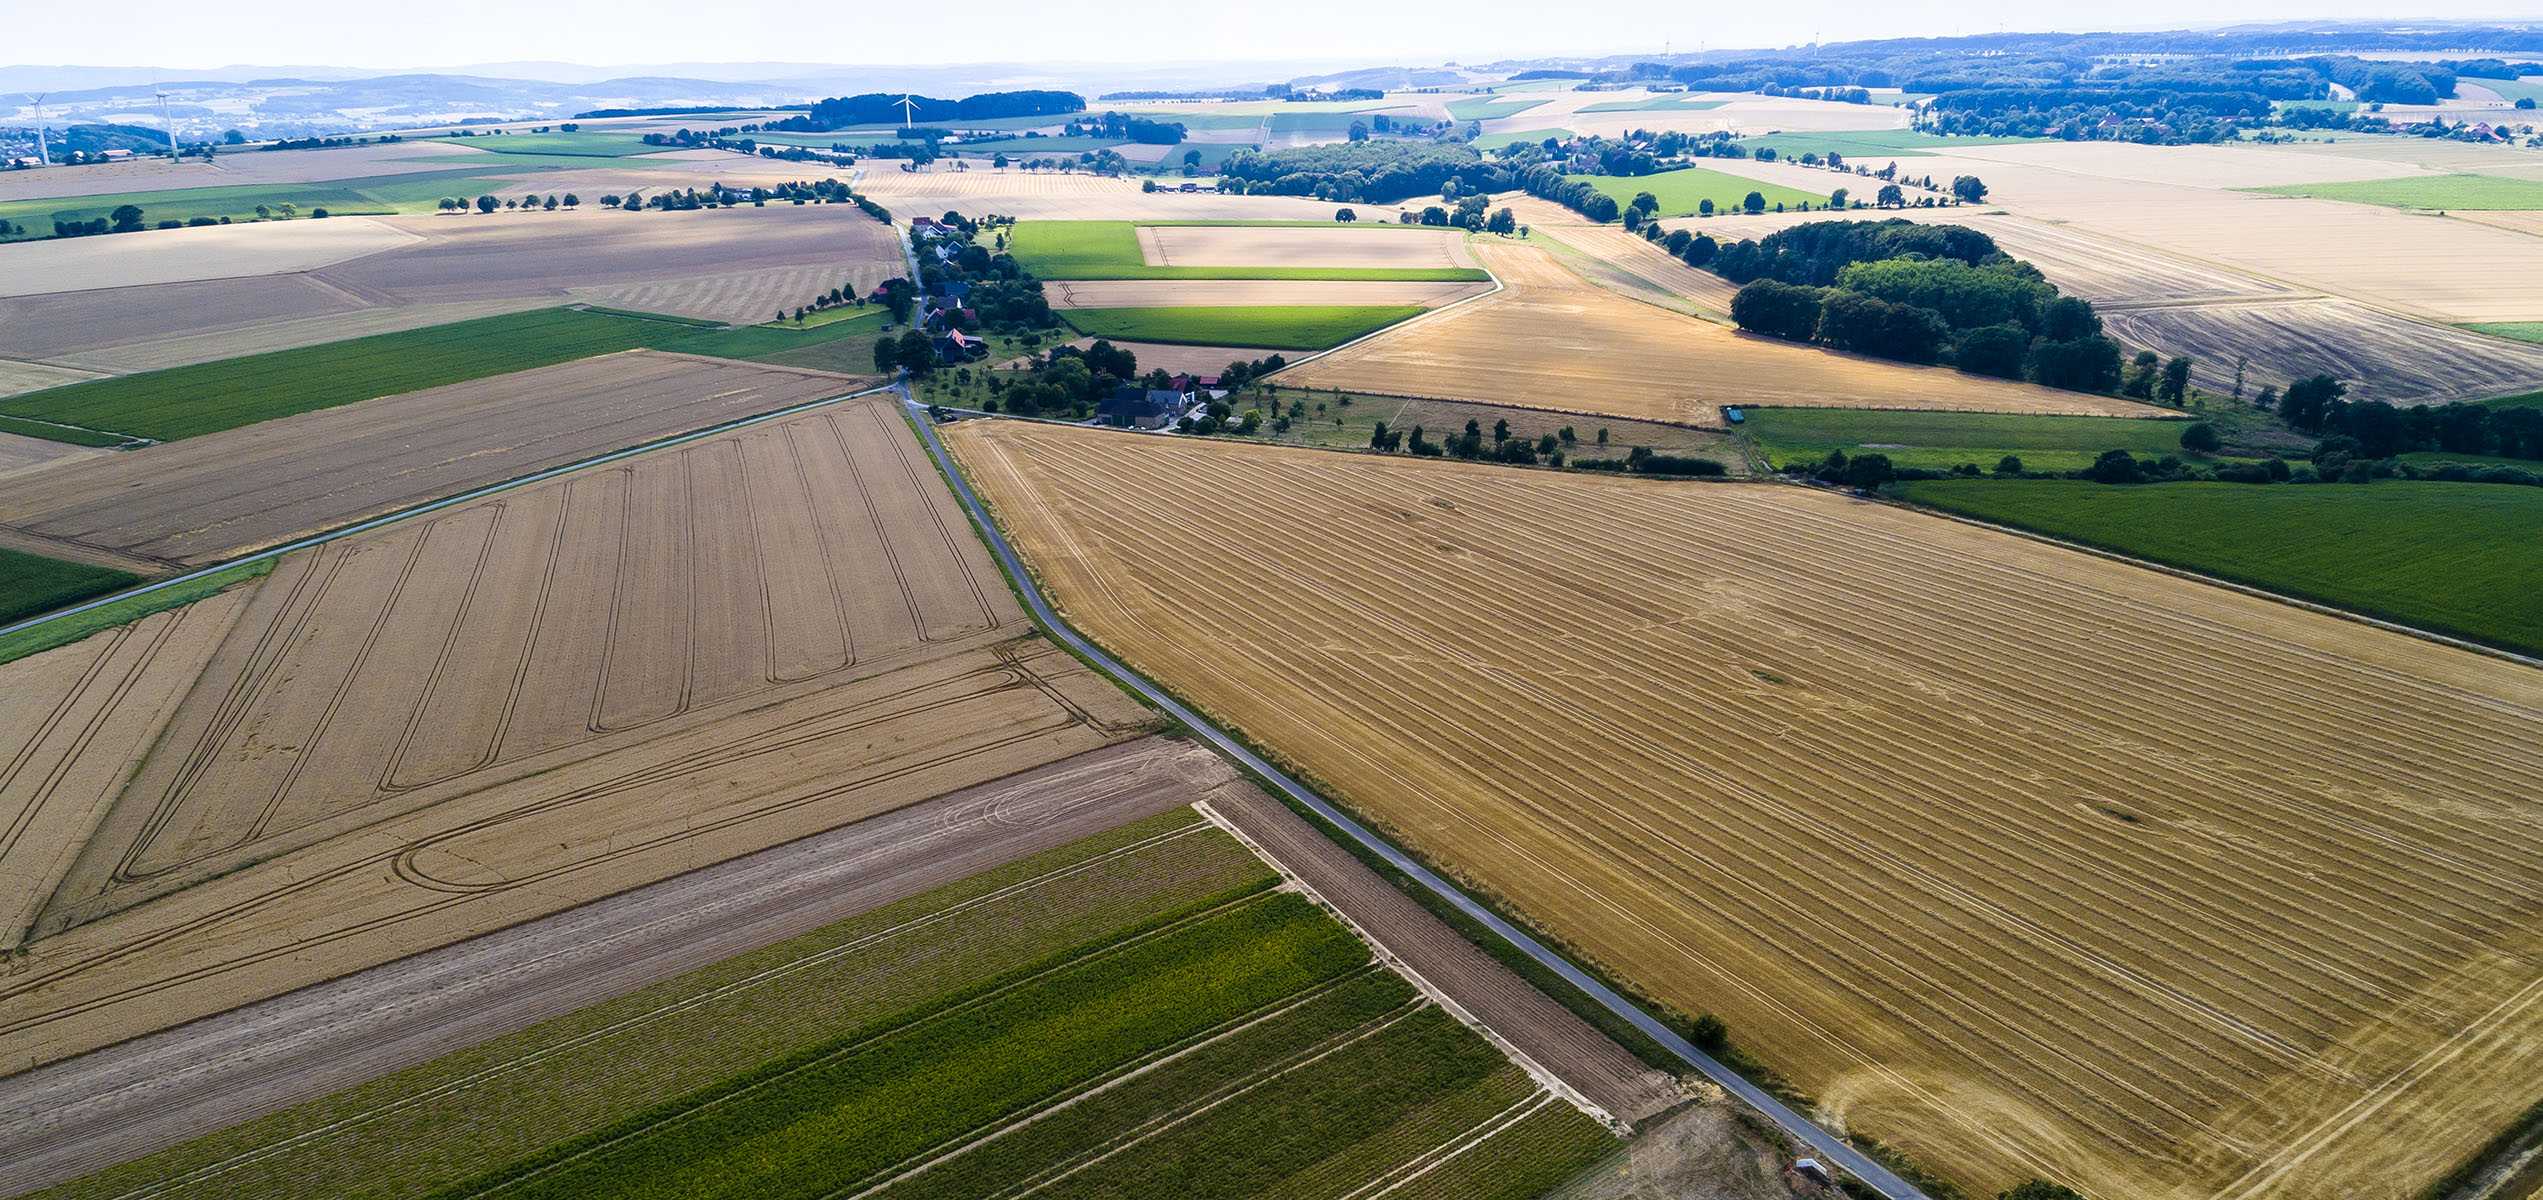 aerial view of a country side with agricultural vqn26p7 min - Прикарпатські громади ознайомилися з організацією електронних земельних аукціонів